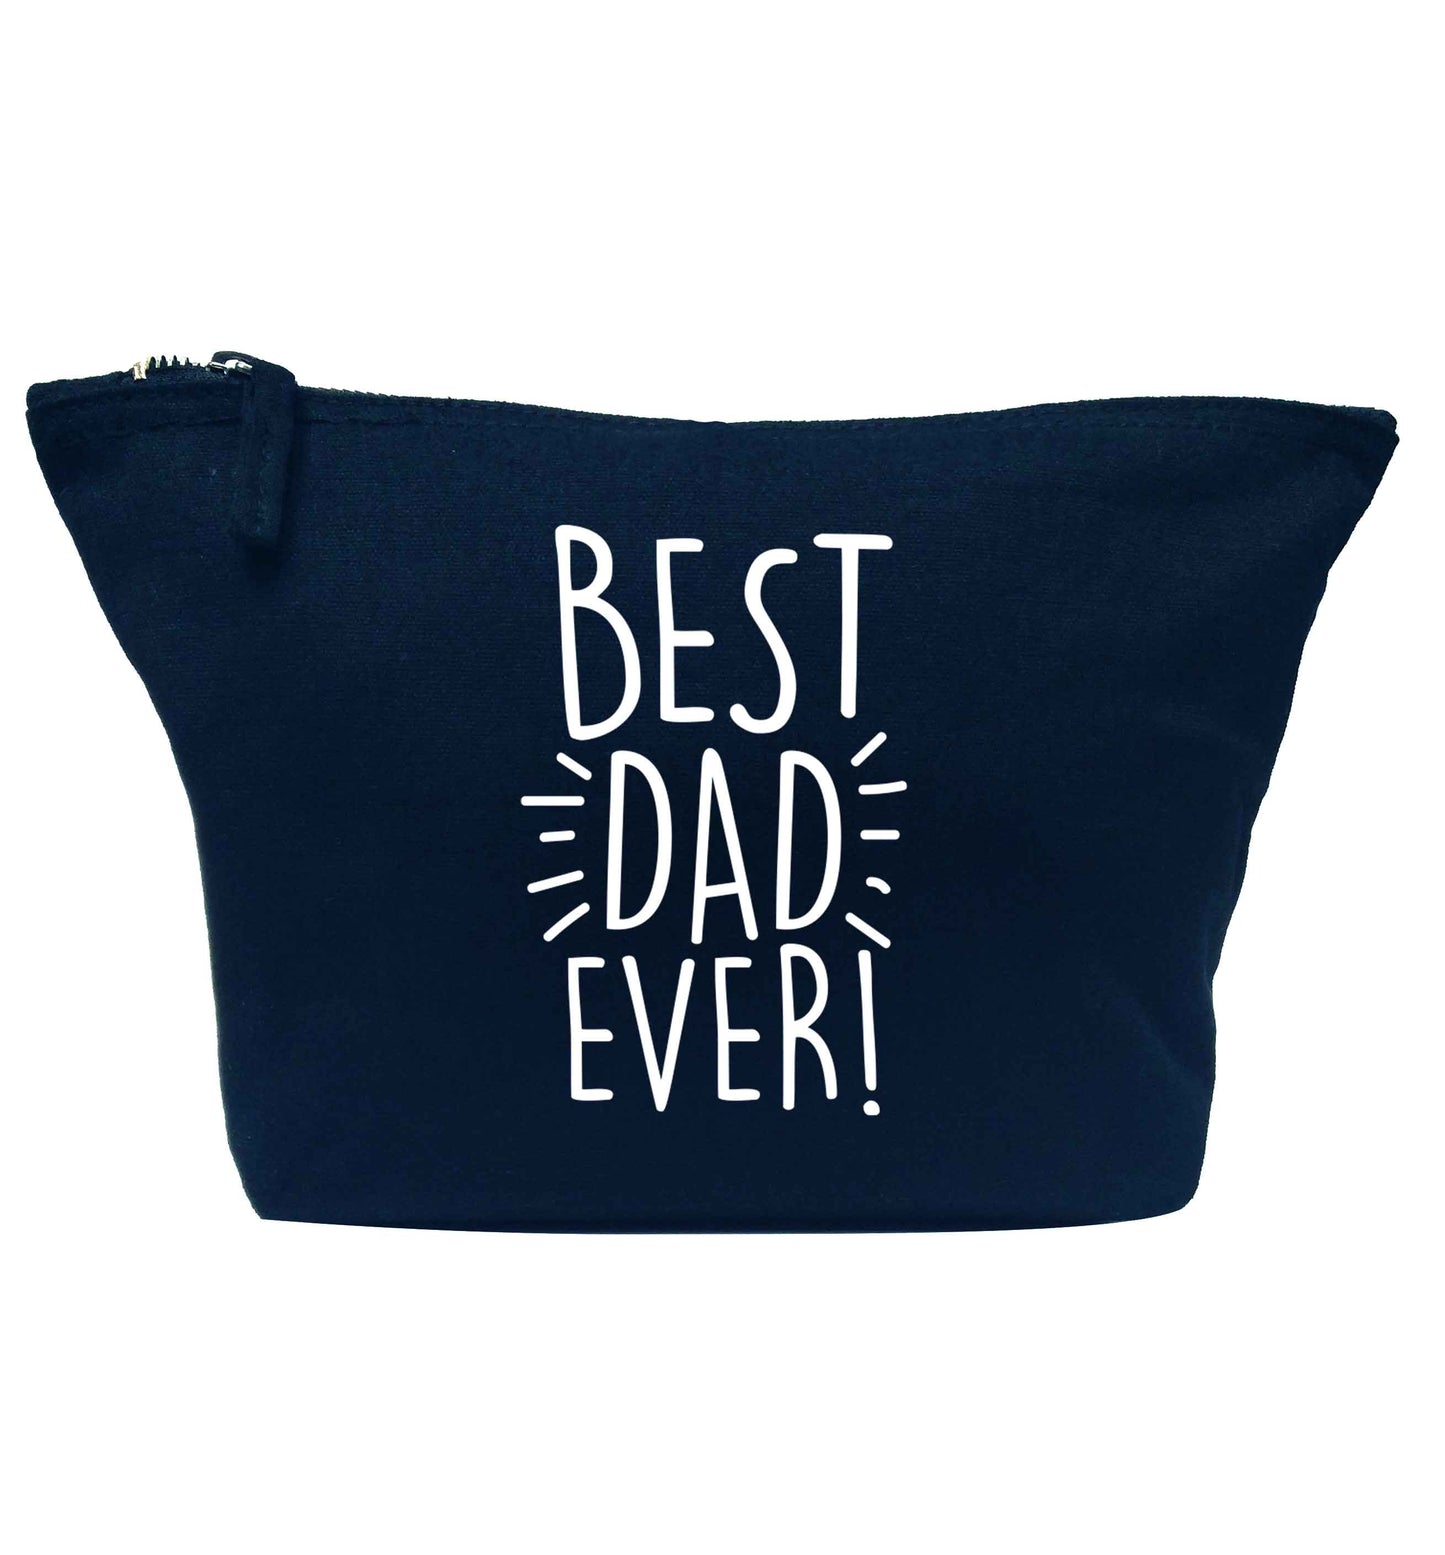 Best dad ever! navy makeup bag